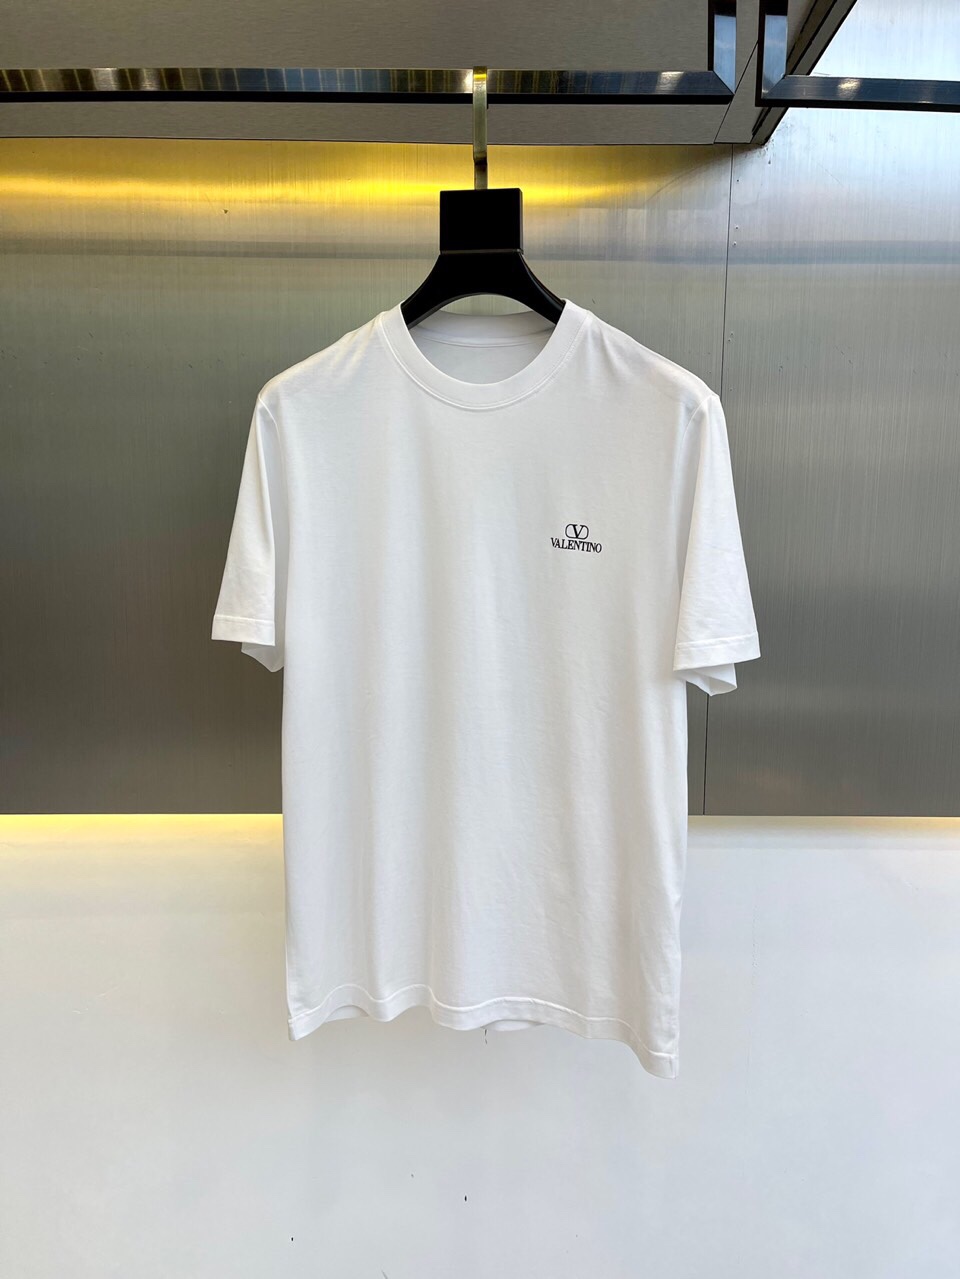 ヴァレンティノ Tシャツ コピー メンズ 洗練された ロゴプリント コットン 半袖Tシャツ 